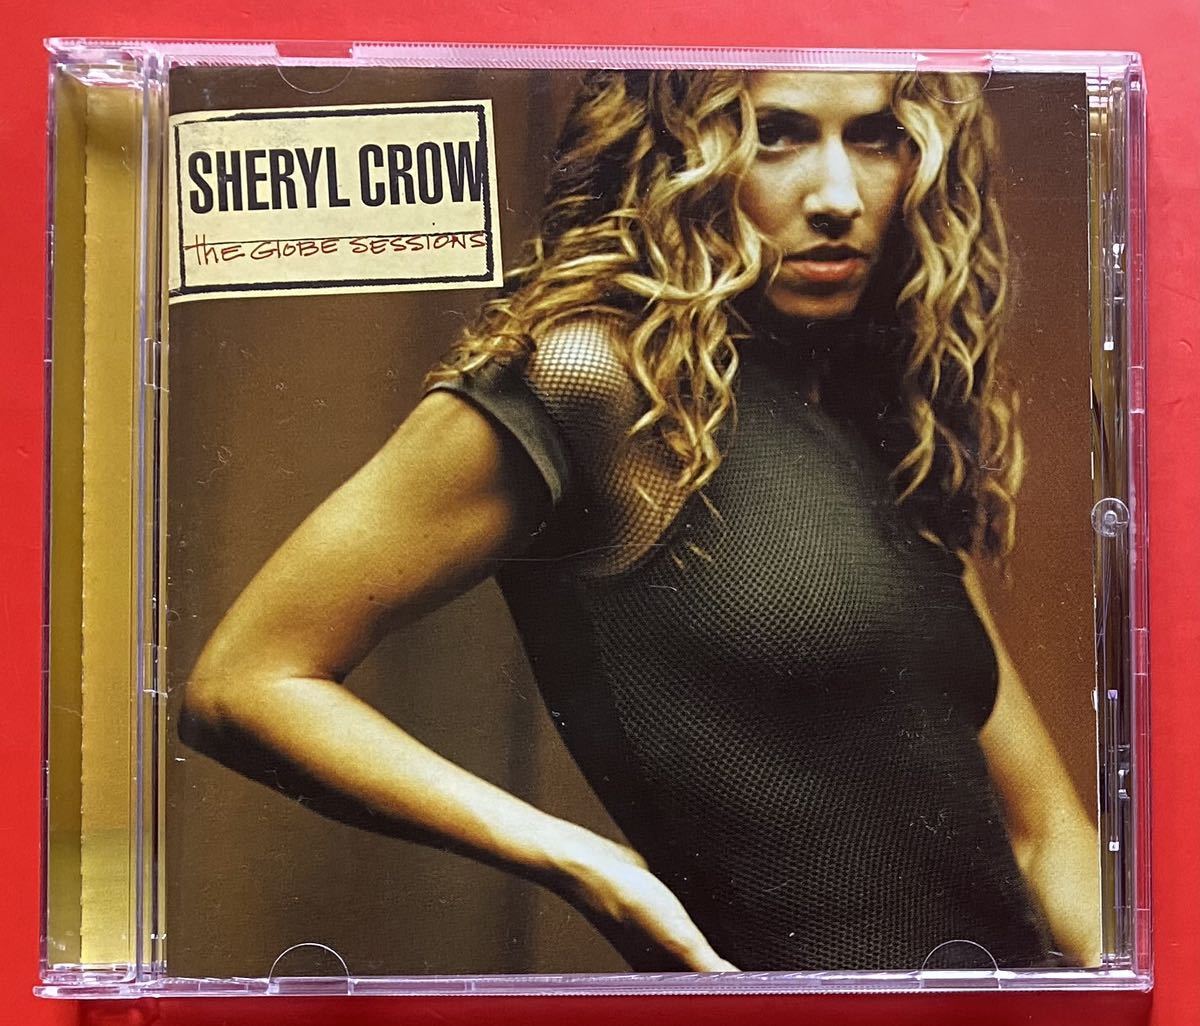 【CD】シェリル・クロウ「THE GLOBE SESSIONS +1」Sheryl Crow ボーナストラックあり 国内盤 [12290175]_画像1